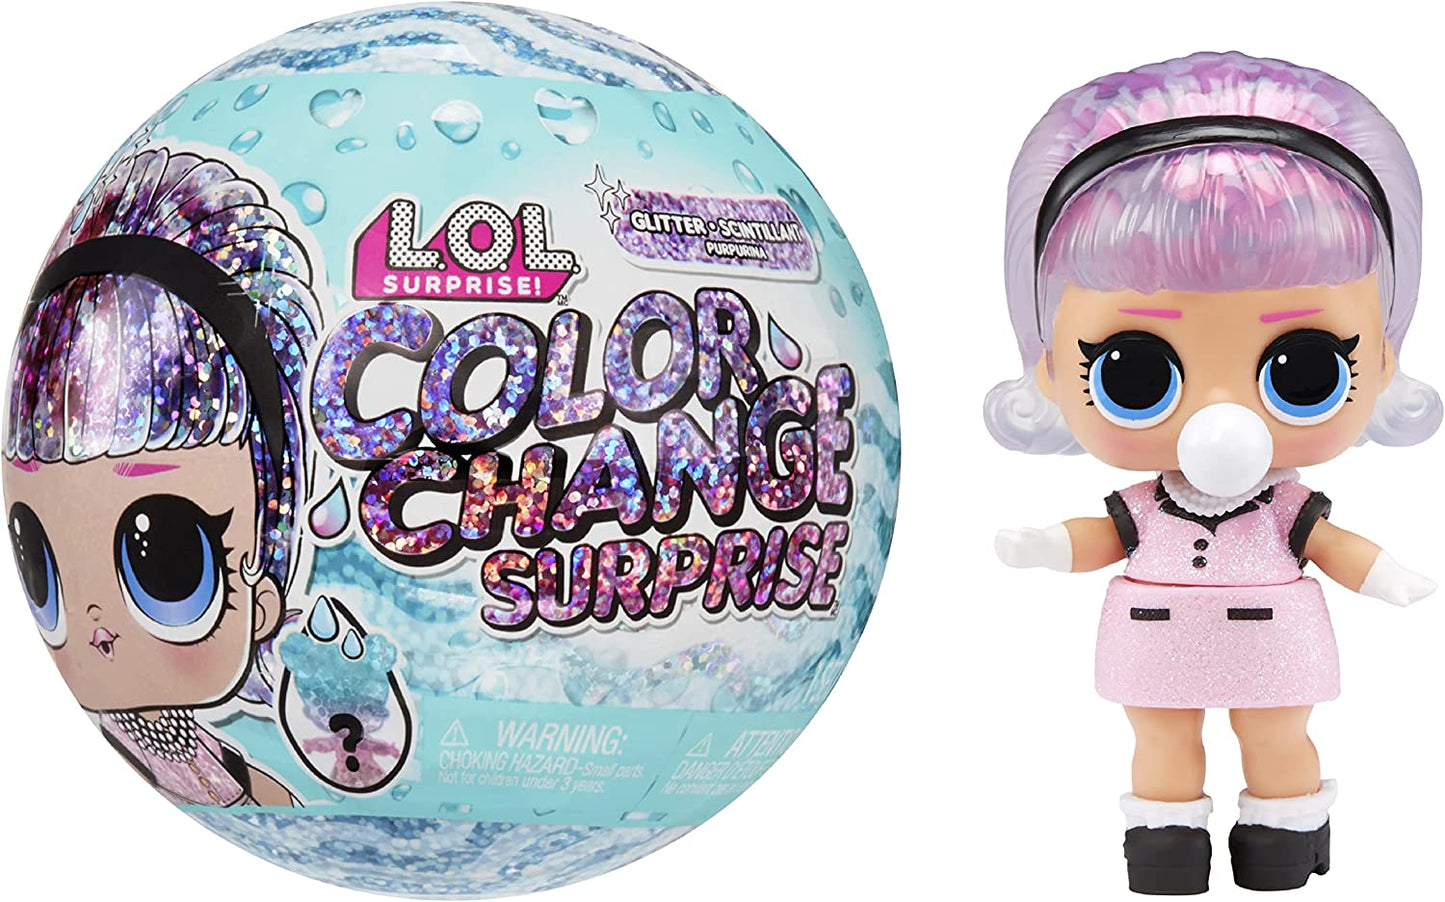 L.O.L. Surprise! Boneca com Acessórios com Glitter Mudança de Cor - 7 Surpresas 4+